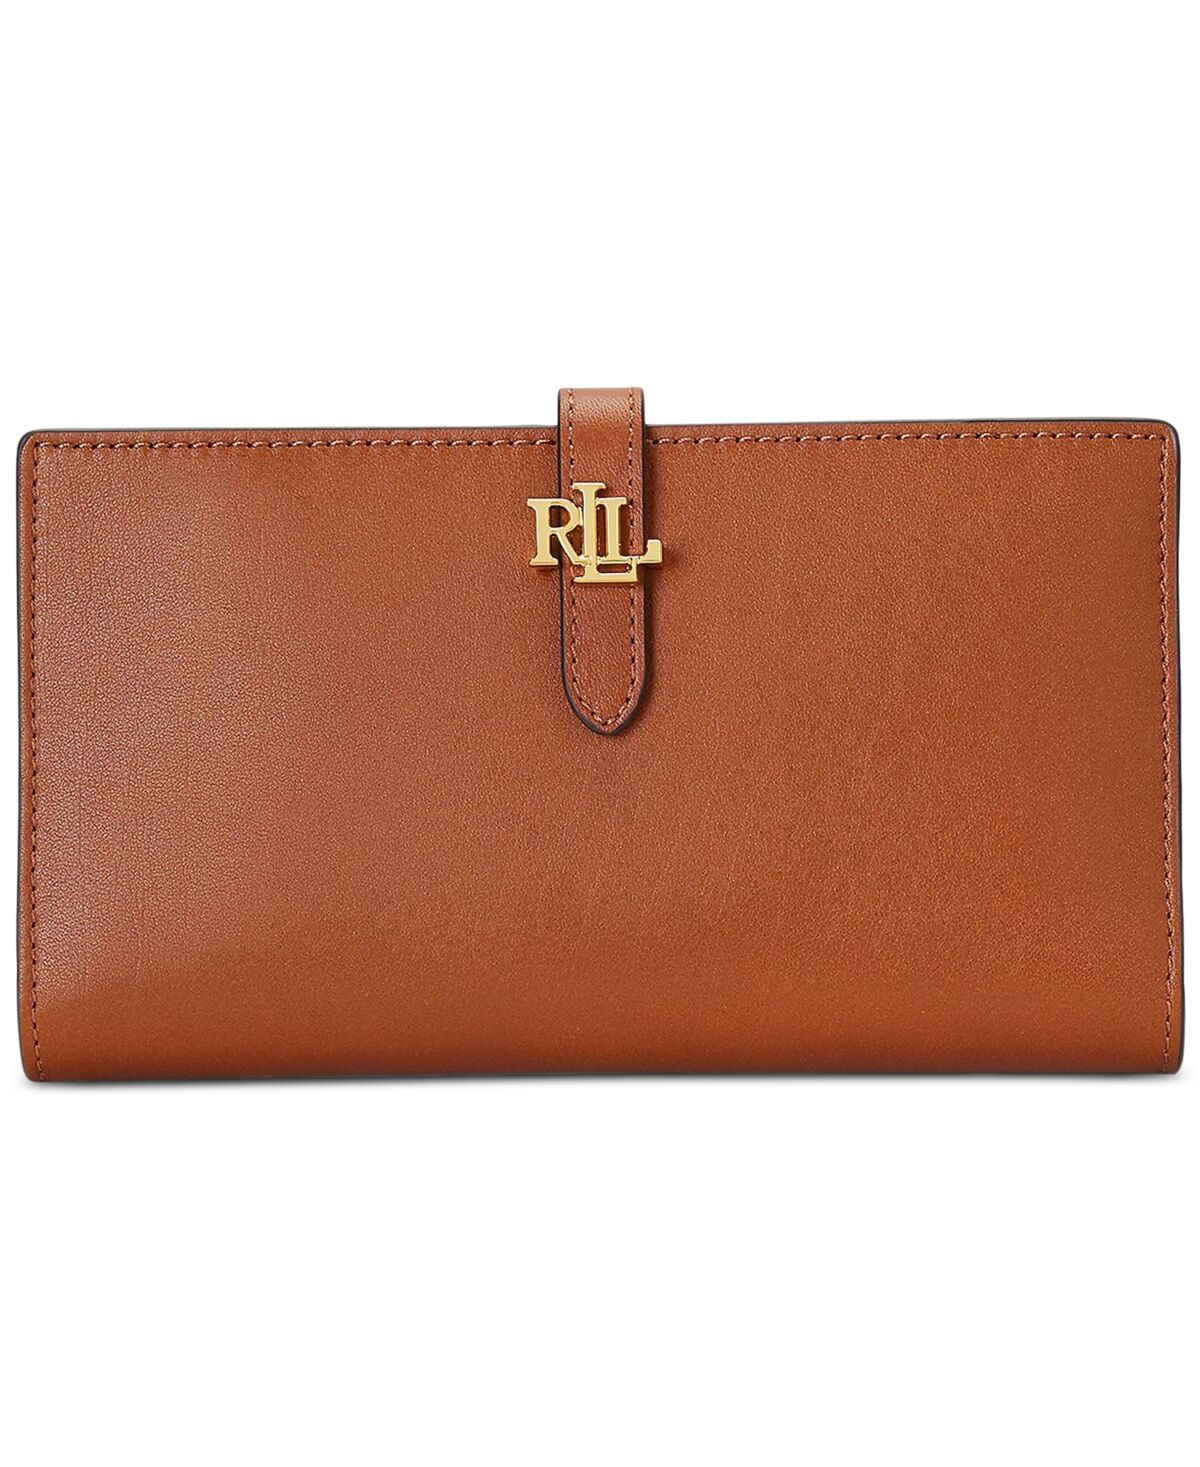 Lauren Ralph Lauren Logo Leather Bifold Wallet - Lauren Tan